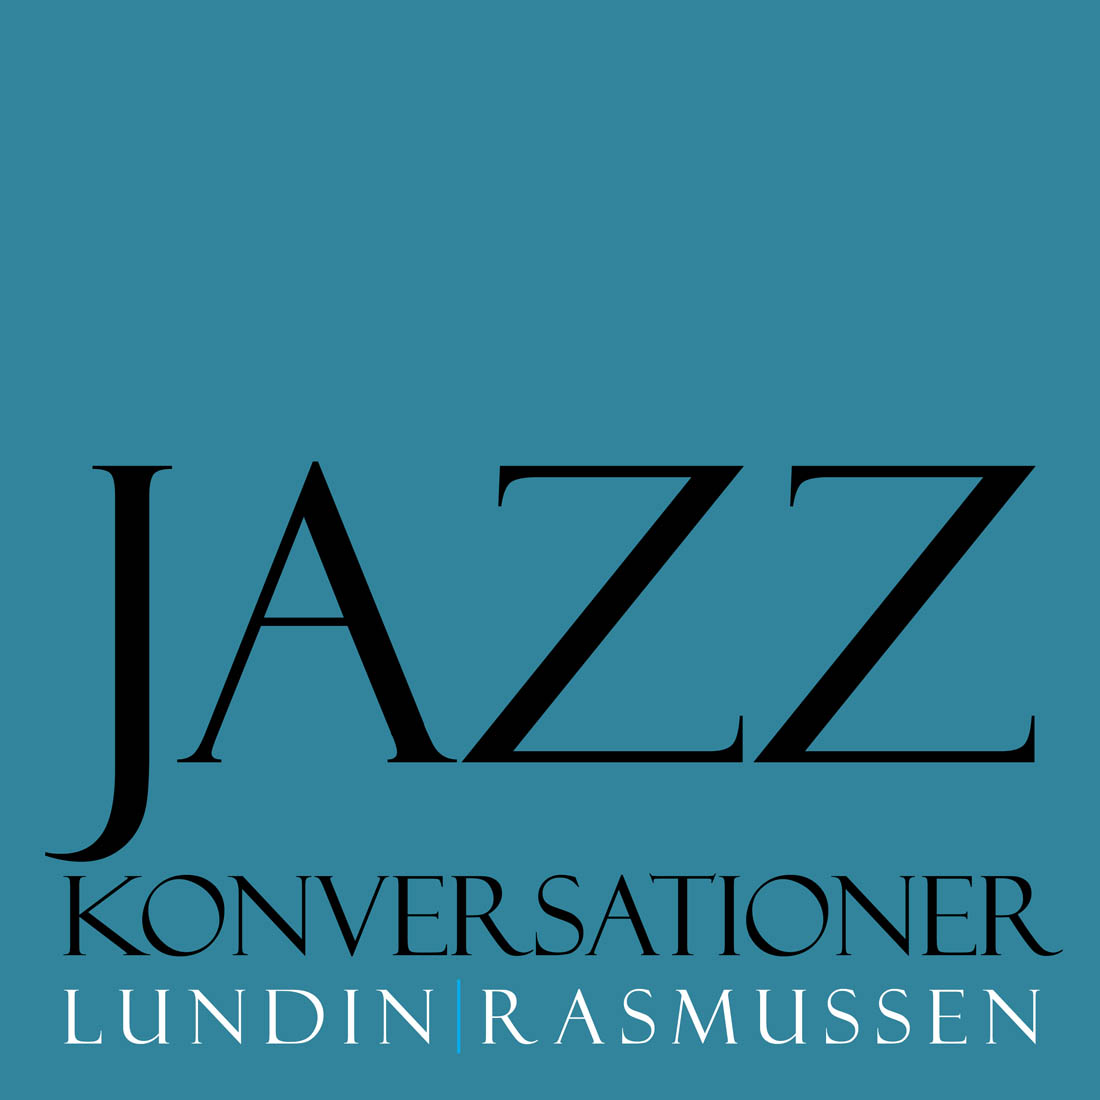 JazzKonversationer Live – Lundin / Rasmussen (DK) - Photo: FOF Aarhus